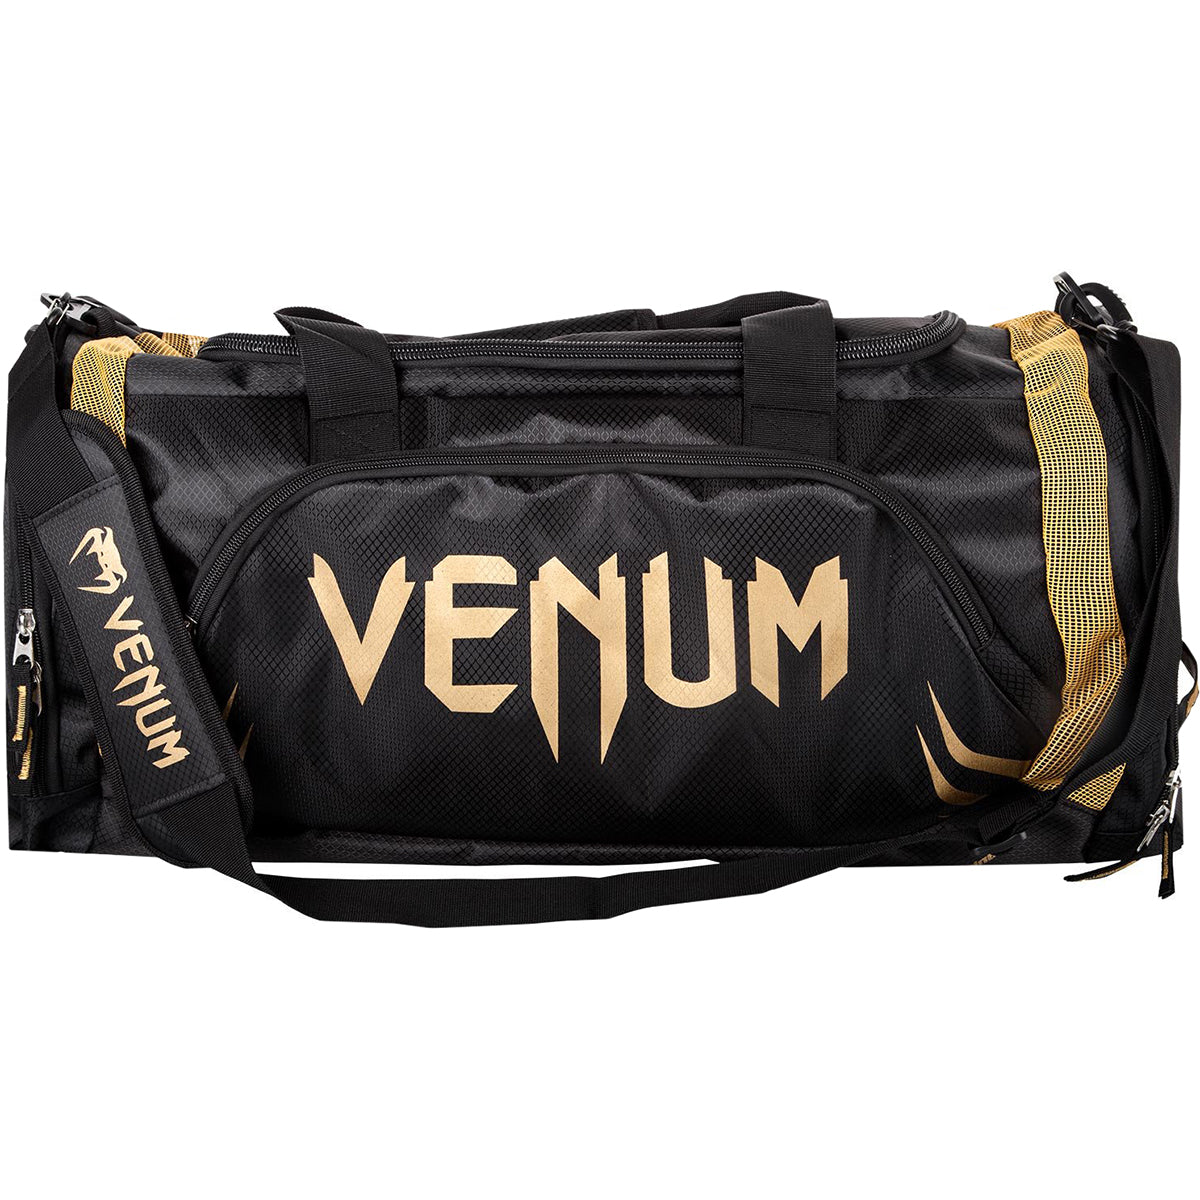 Venum Trainer Lite Sport Duffel Bag - Black/Gold Venum